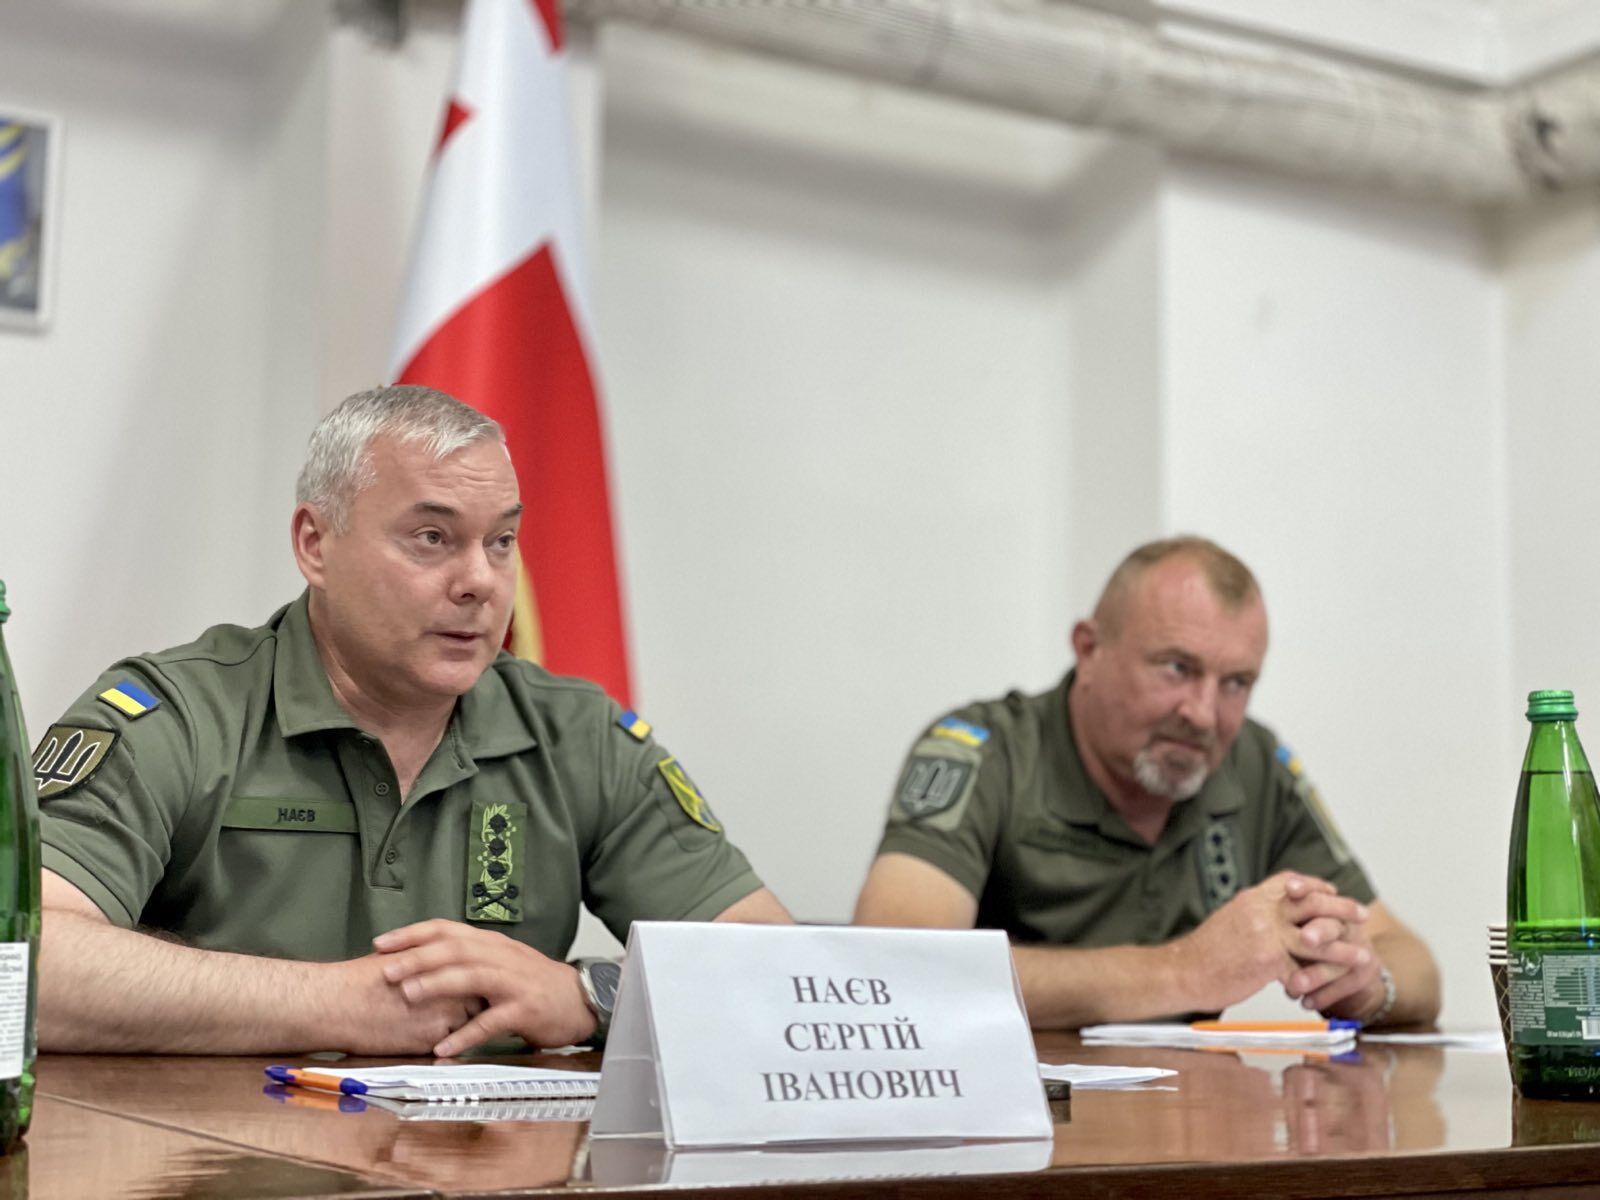 Наев проинспектировал украинско-беларускую границу и рассказал о работе контрразведки. Видео